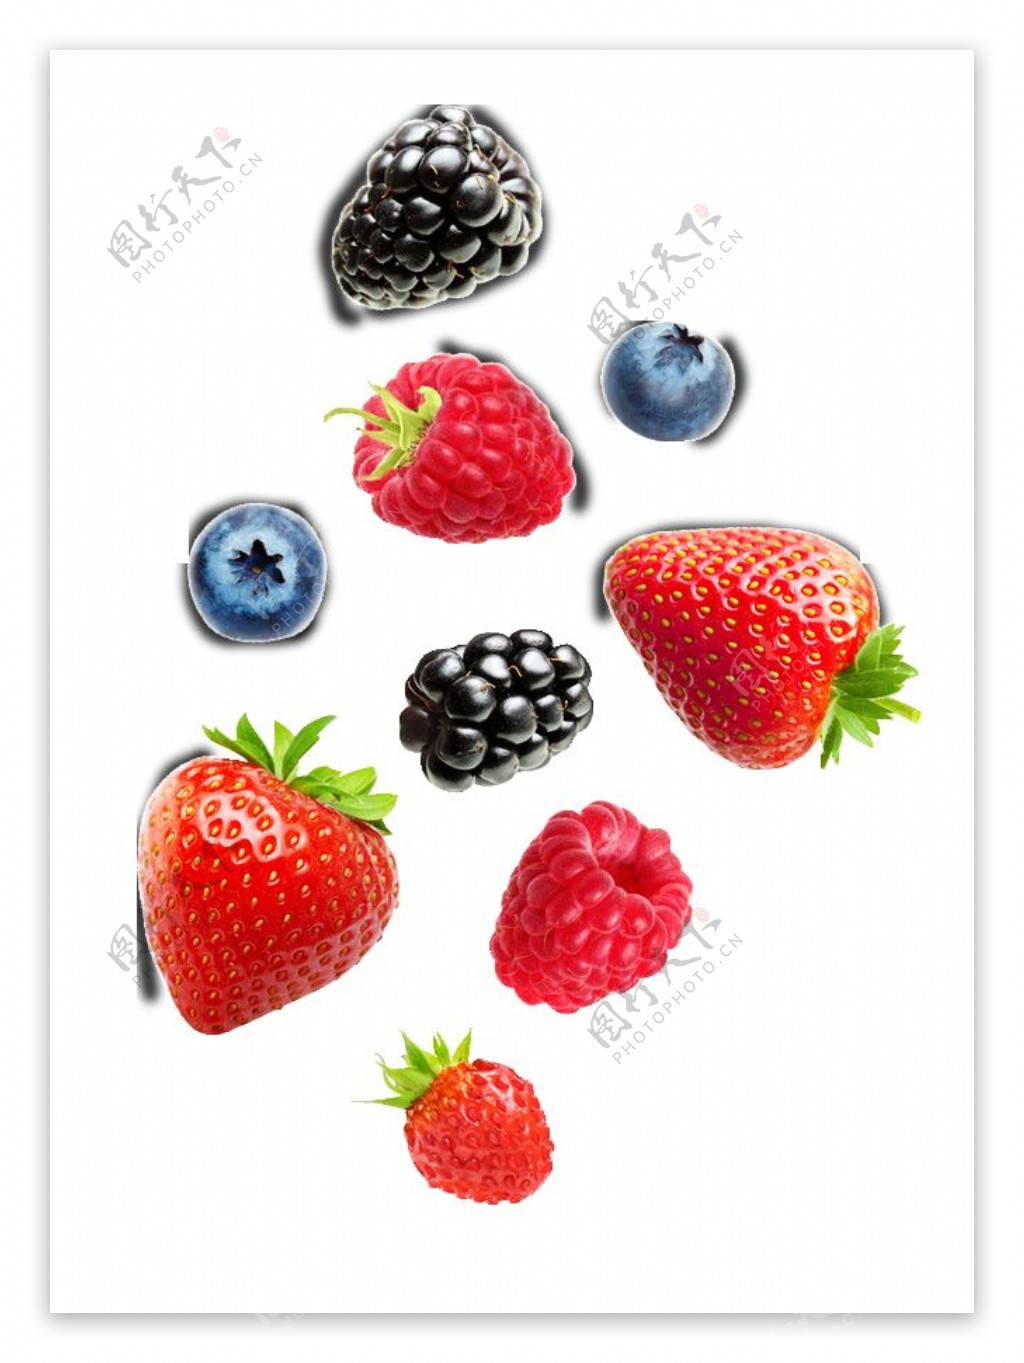 水果草莓桑葚葡萄